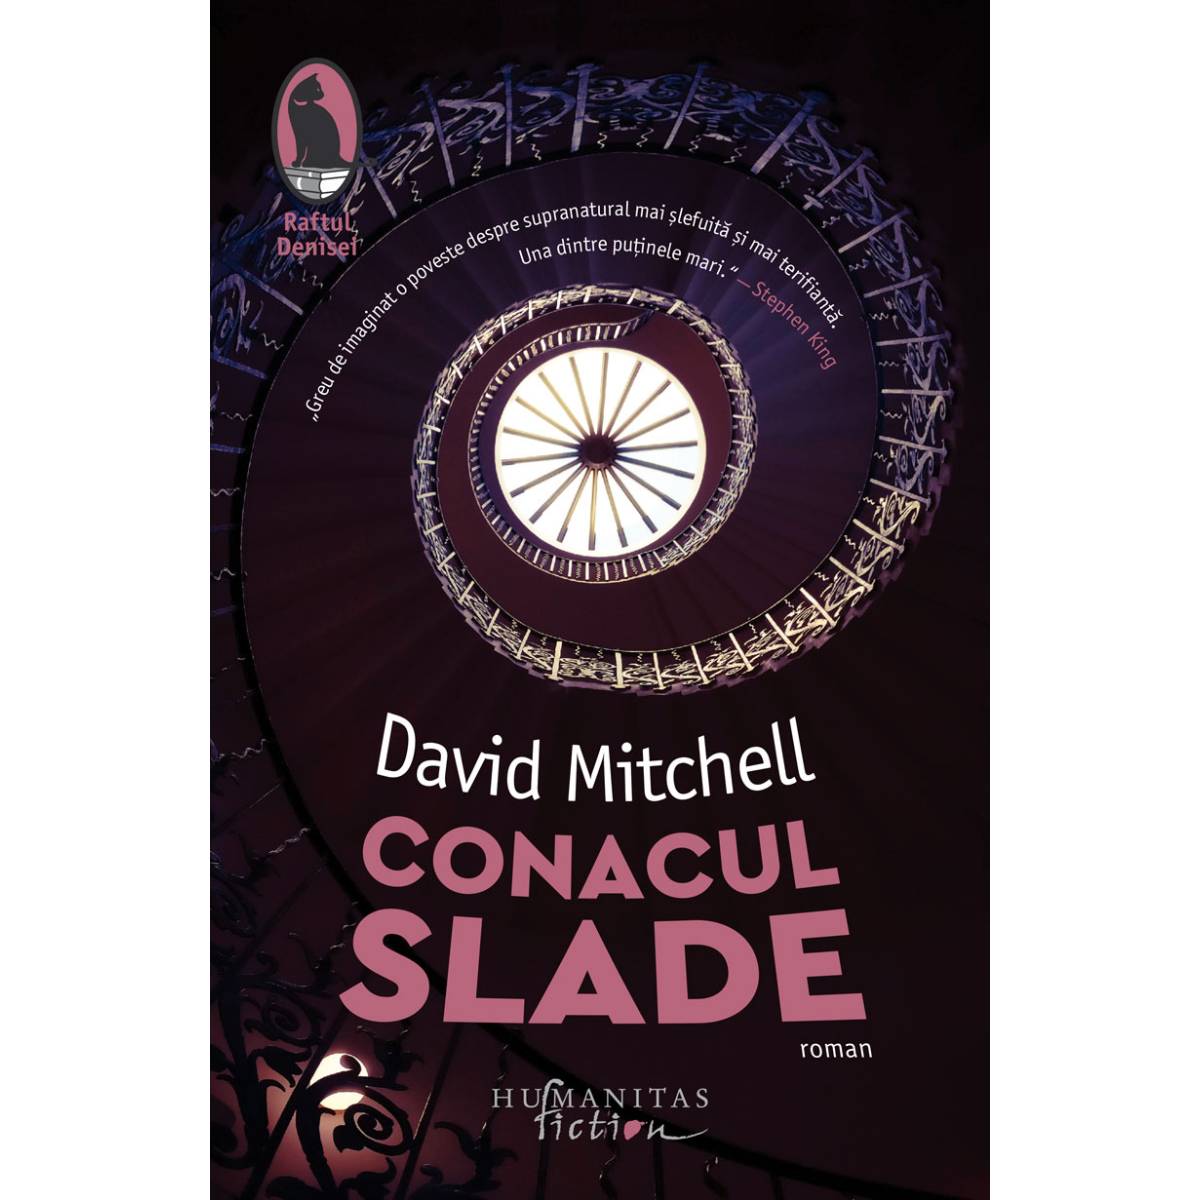 Conacul Slade, David Mitchell Humanitas